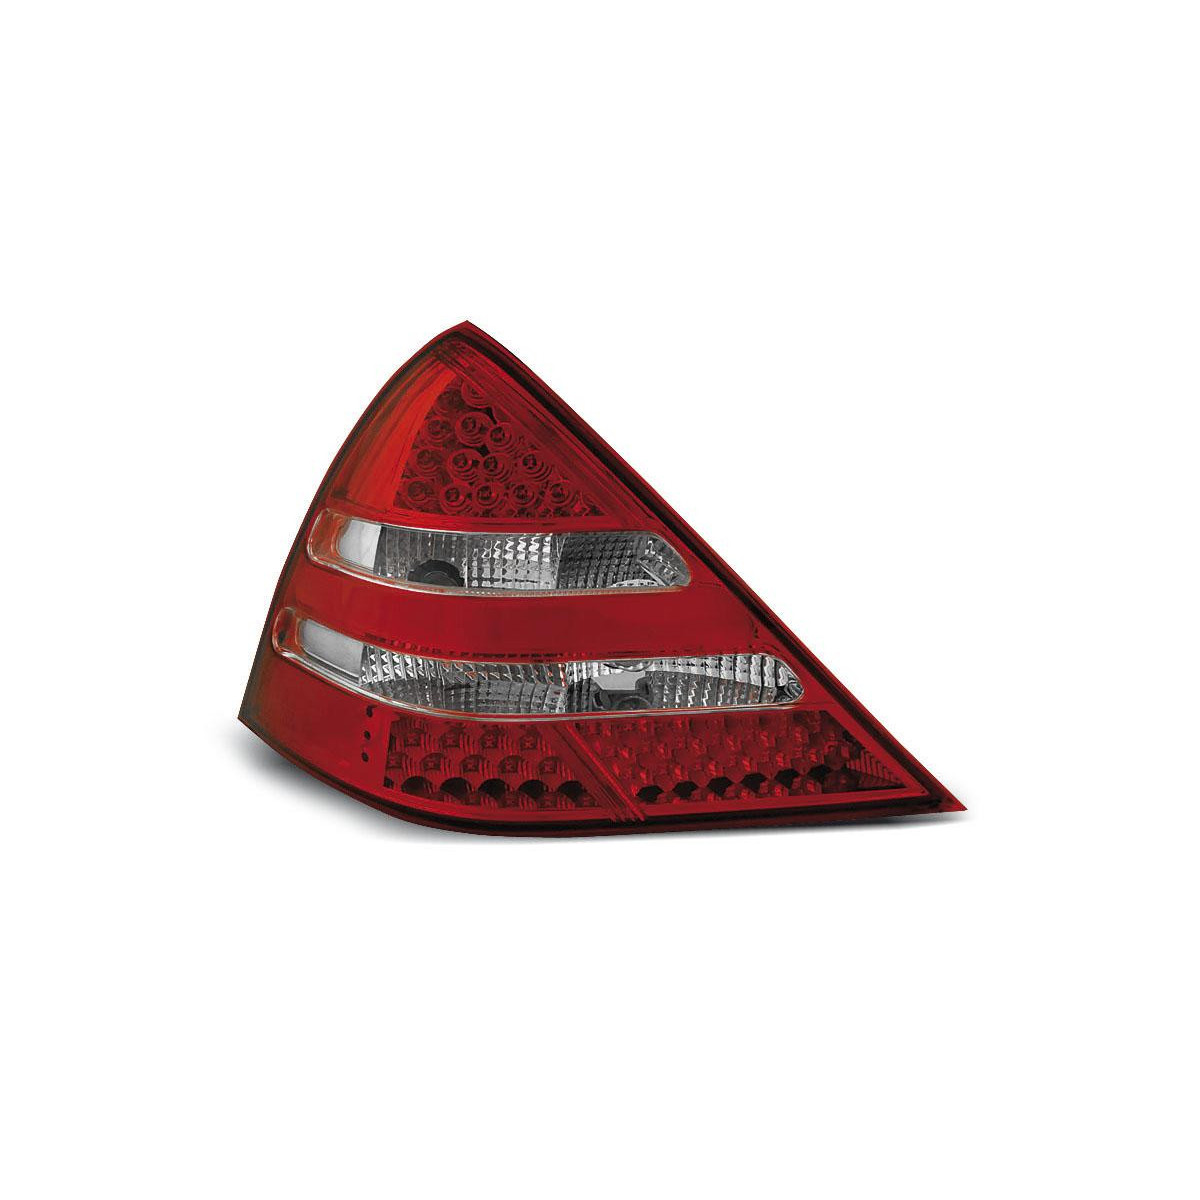 LAMPY TYLNE MERCEDES R170 SLK RED WHITE LED